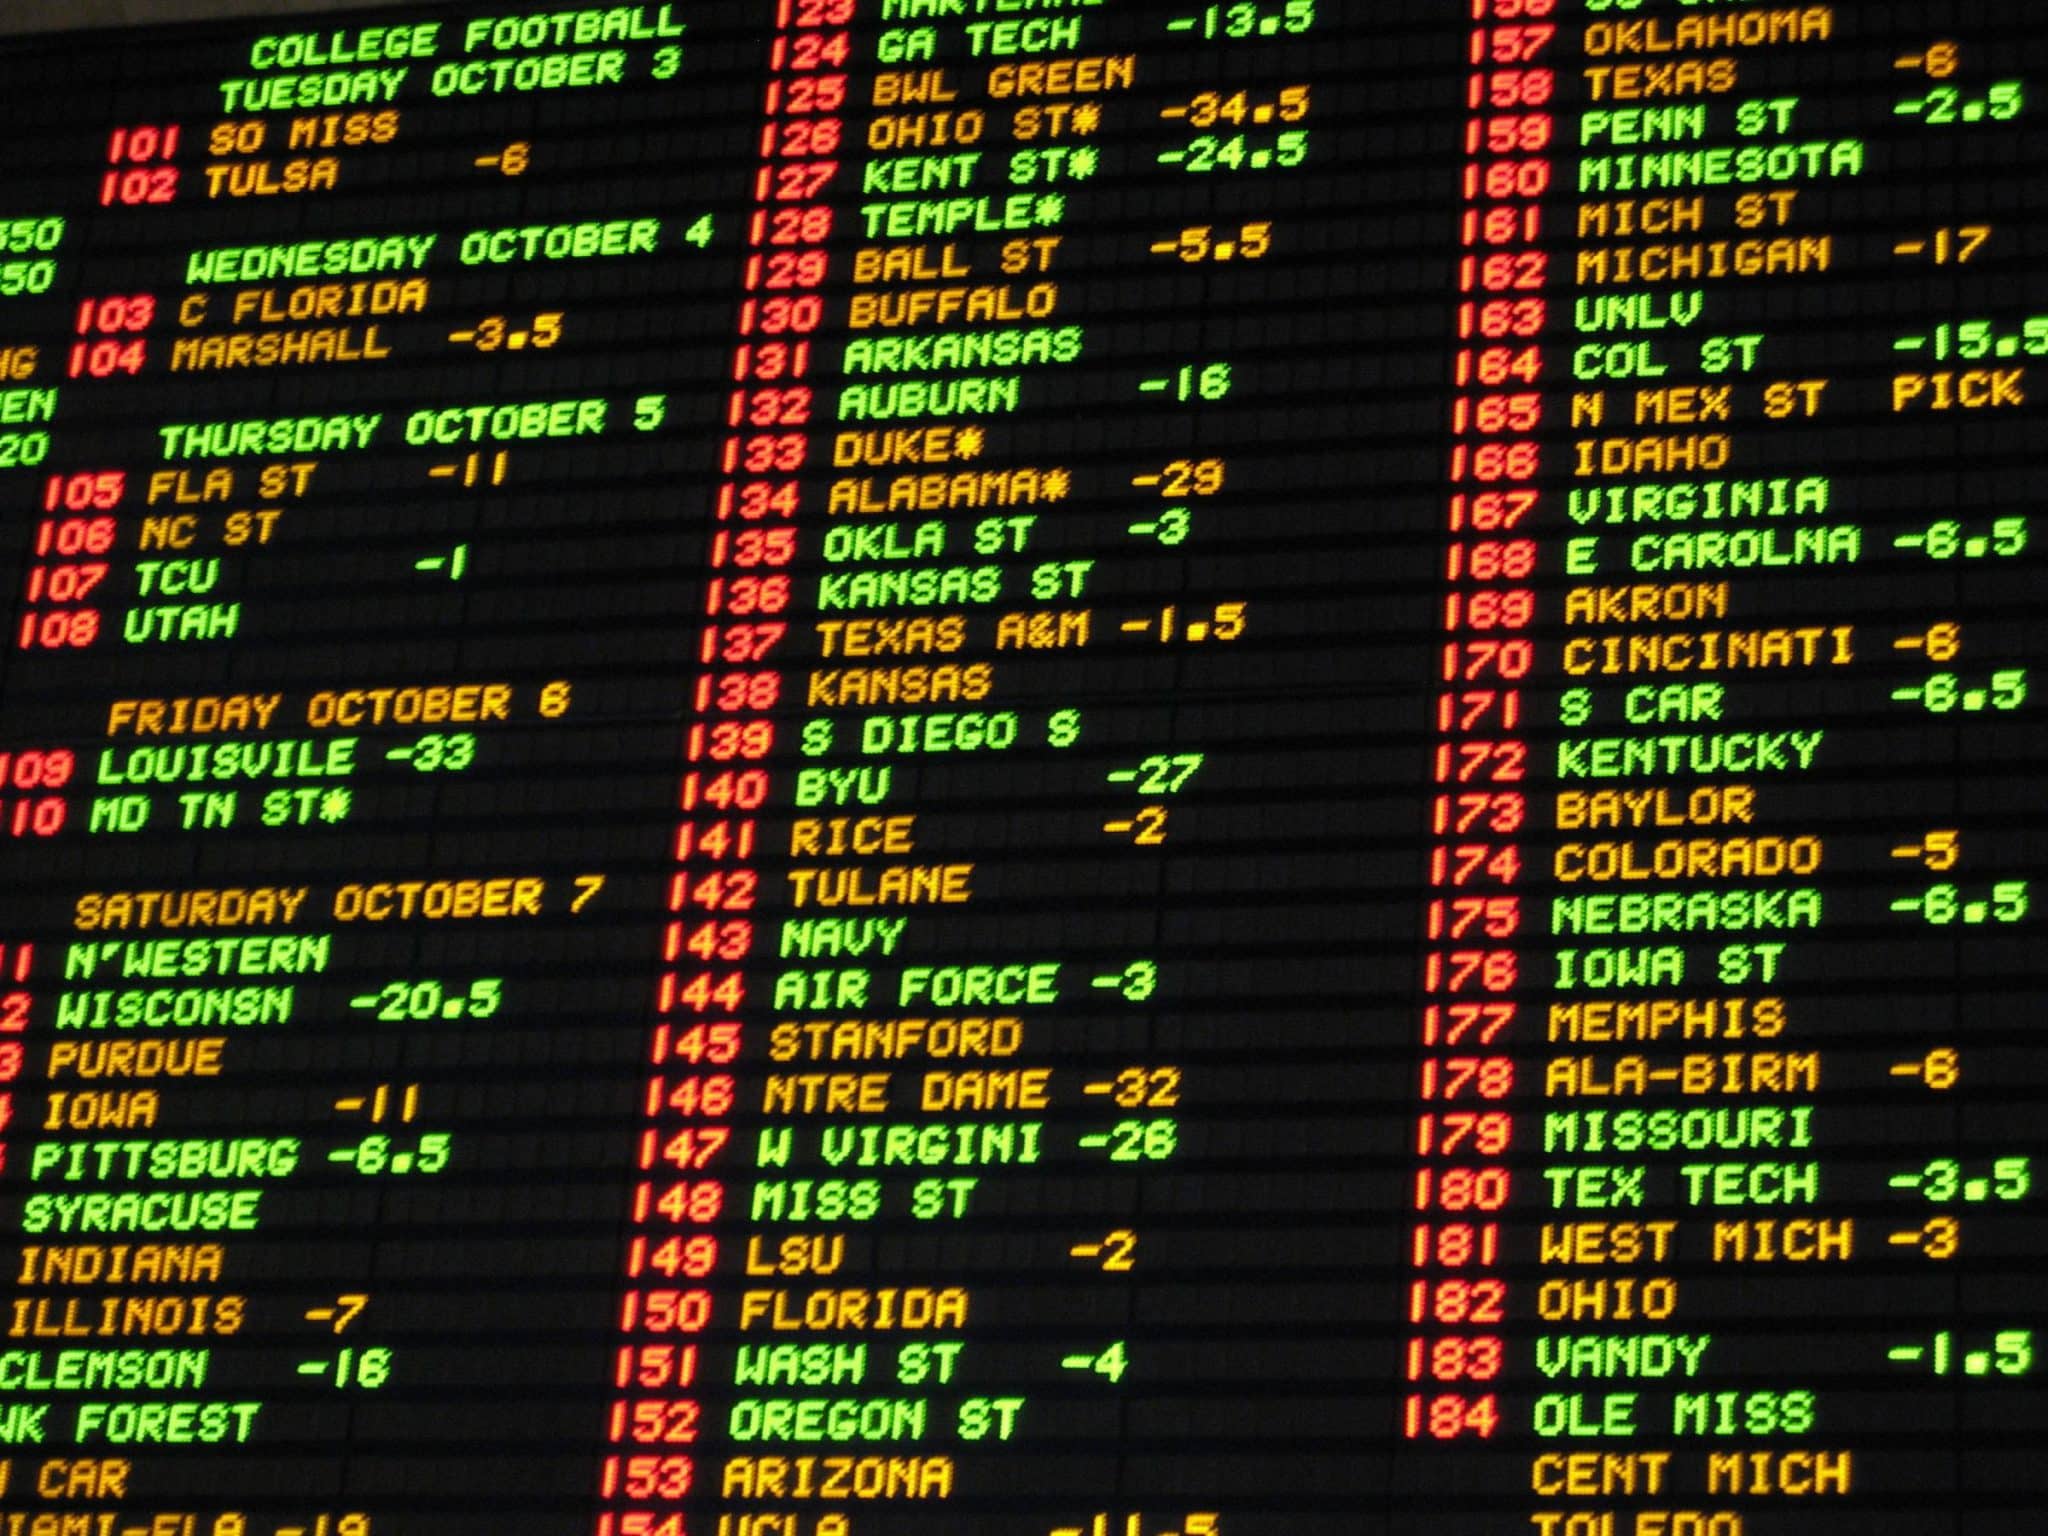 online betting breakdown sports in game